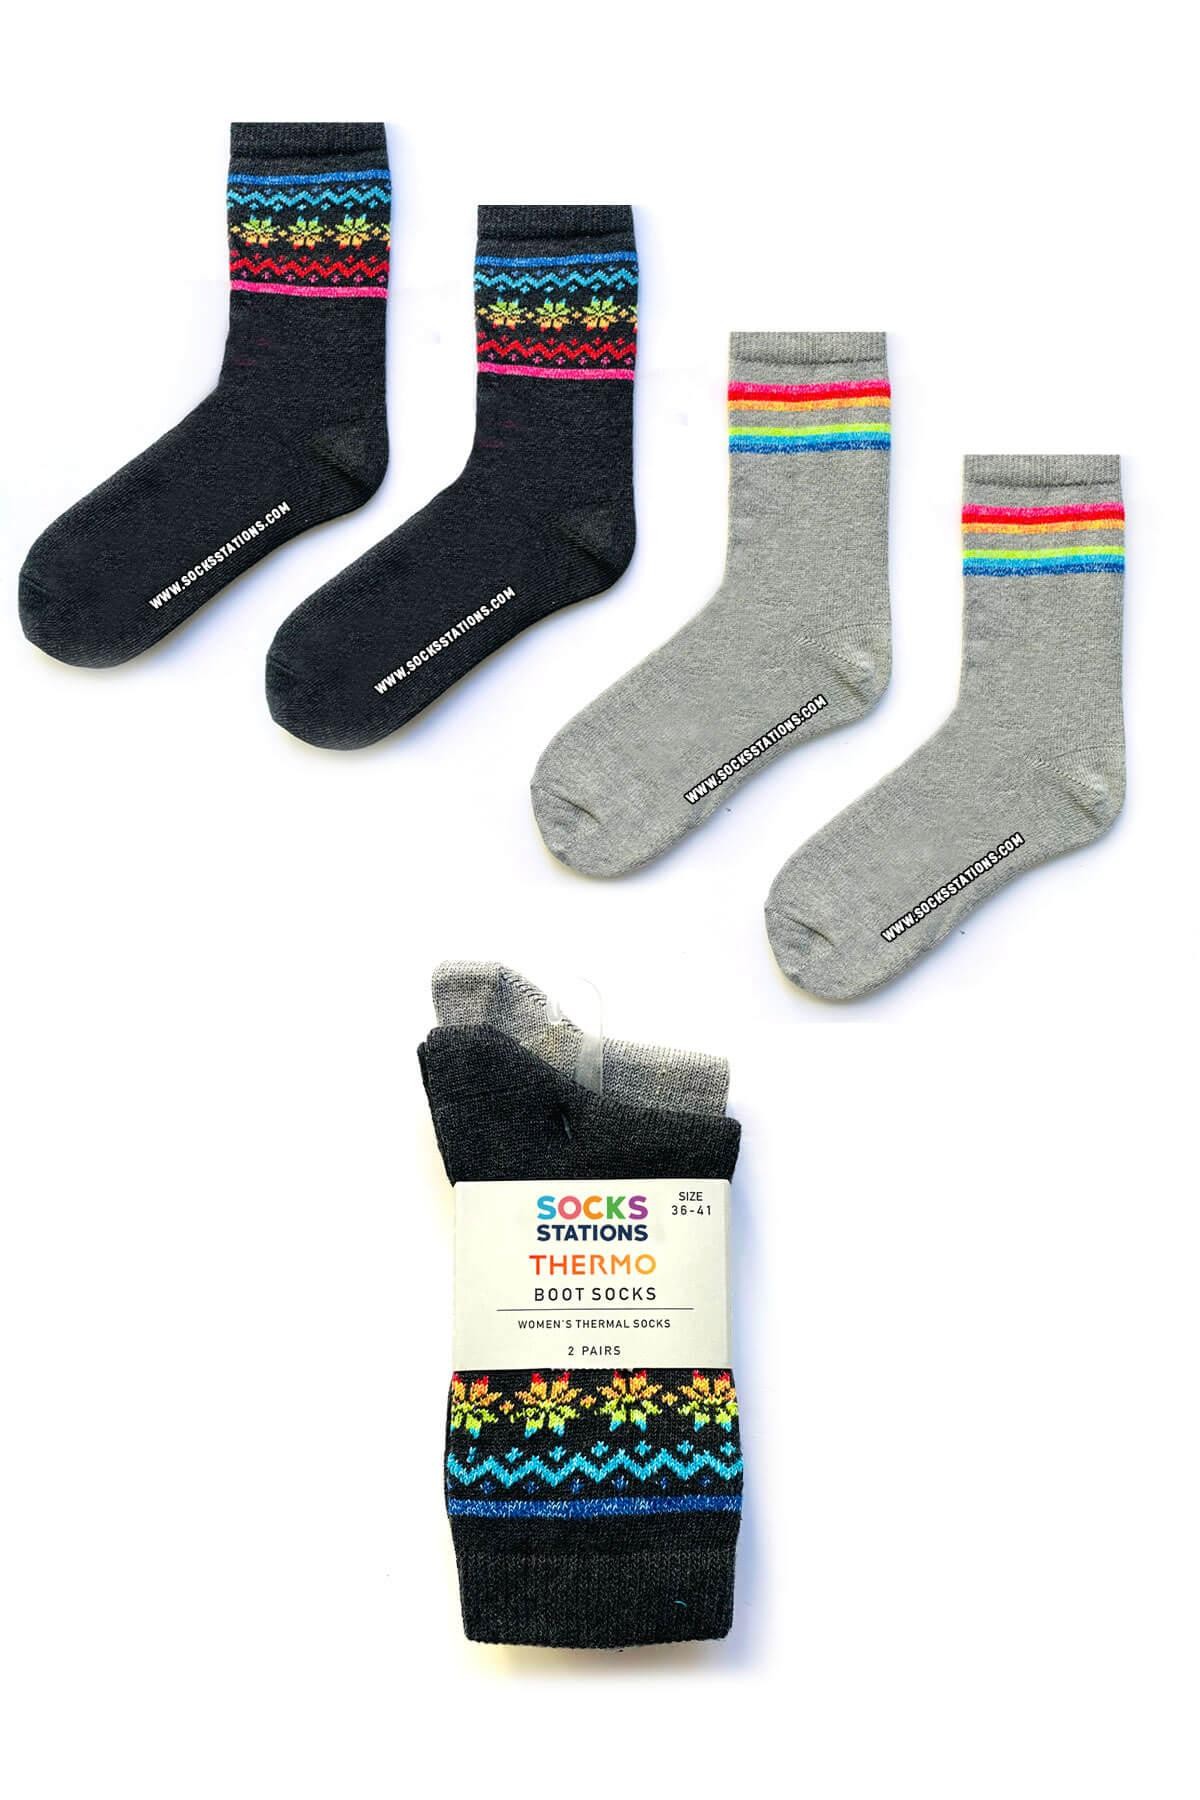 Kışlık Yün Çorap - Şekilli Çizgili Gri Renkli Desenli Yün Çorap Seti 2'li Yılbaşı Çorapları